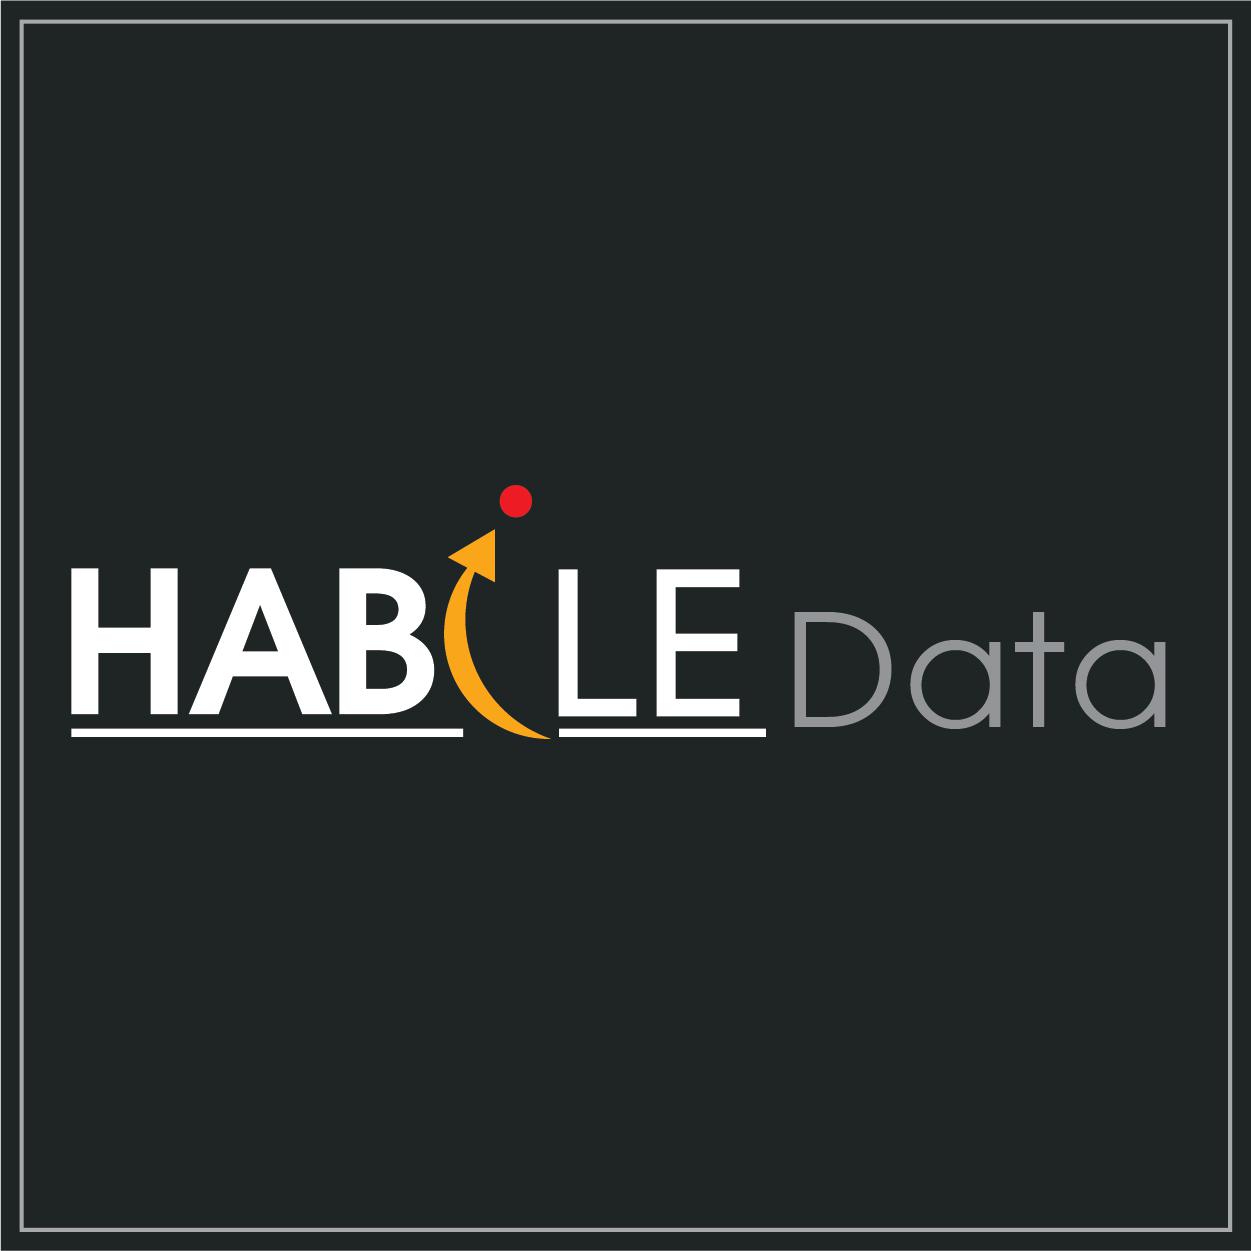 HabileData - Data Annotation Company for AI and ML